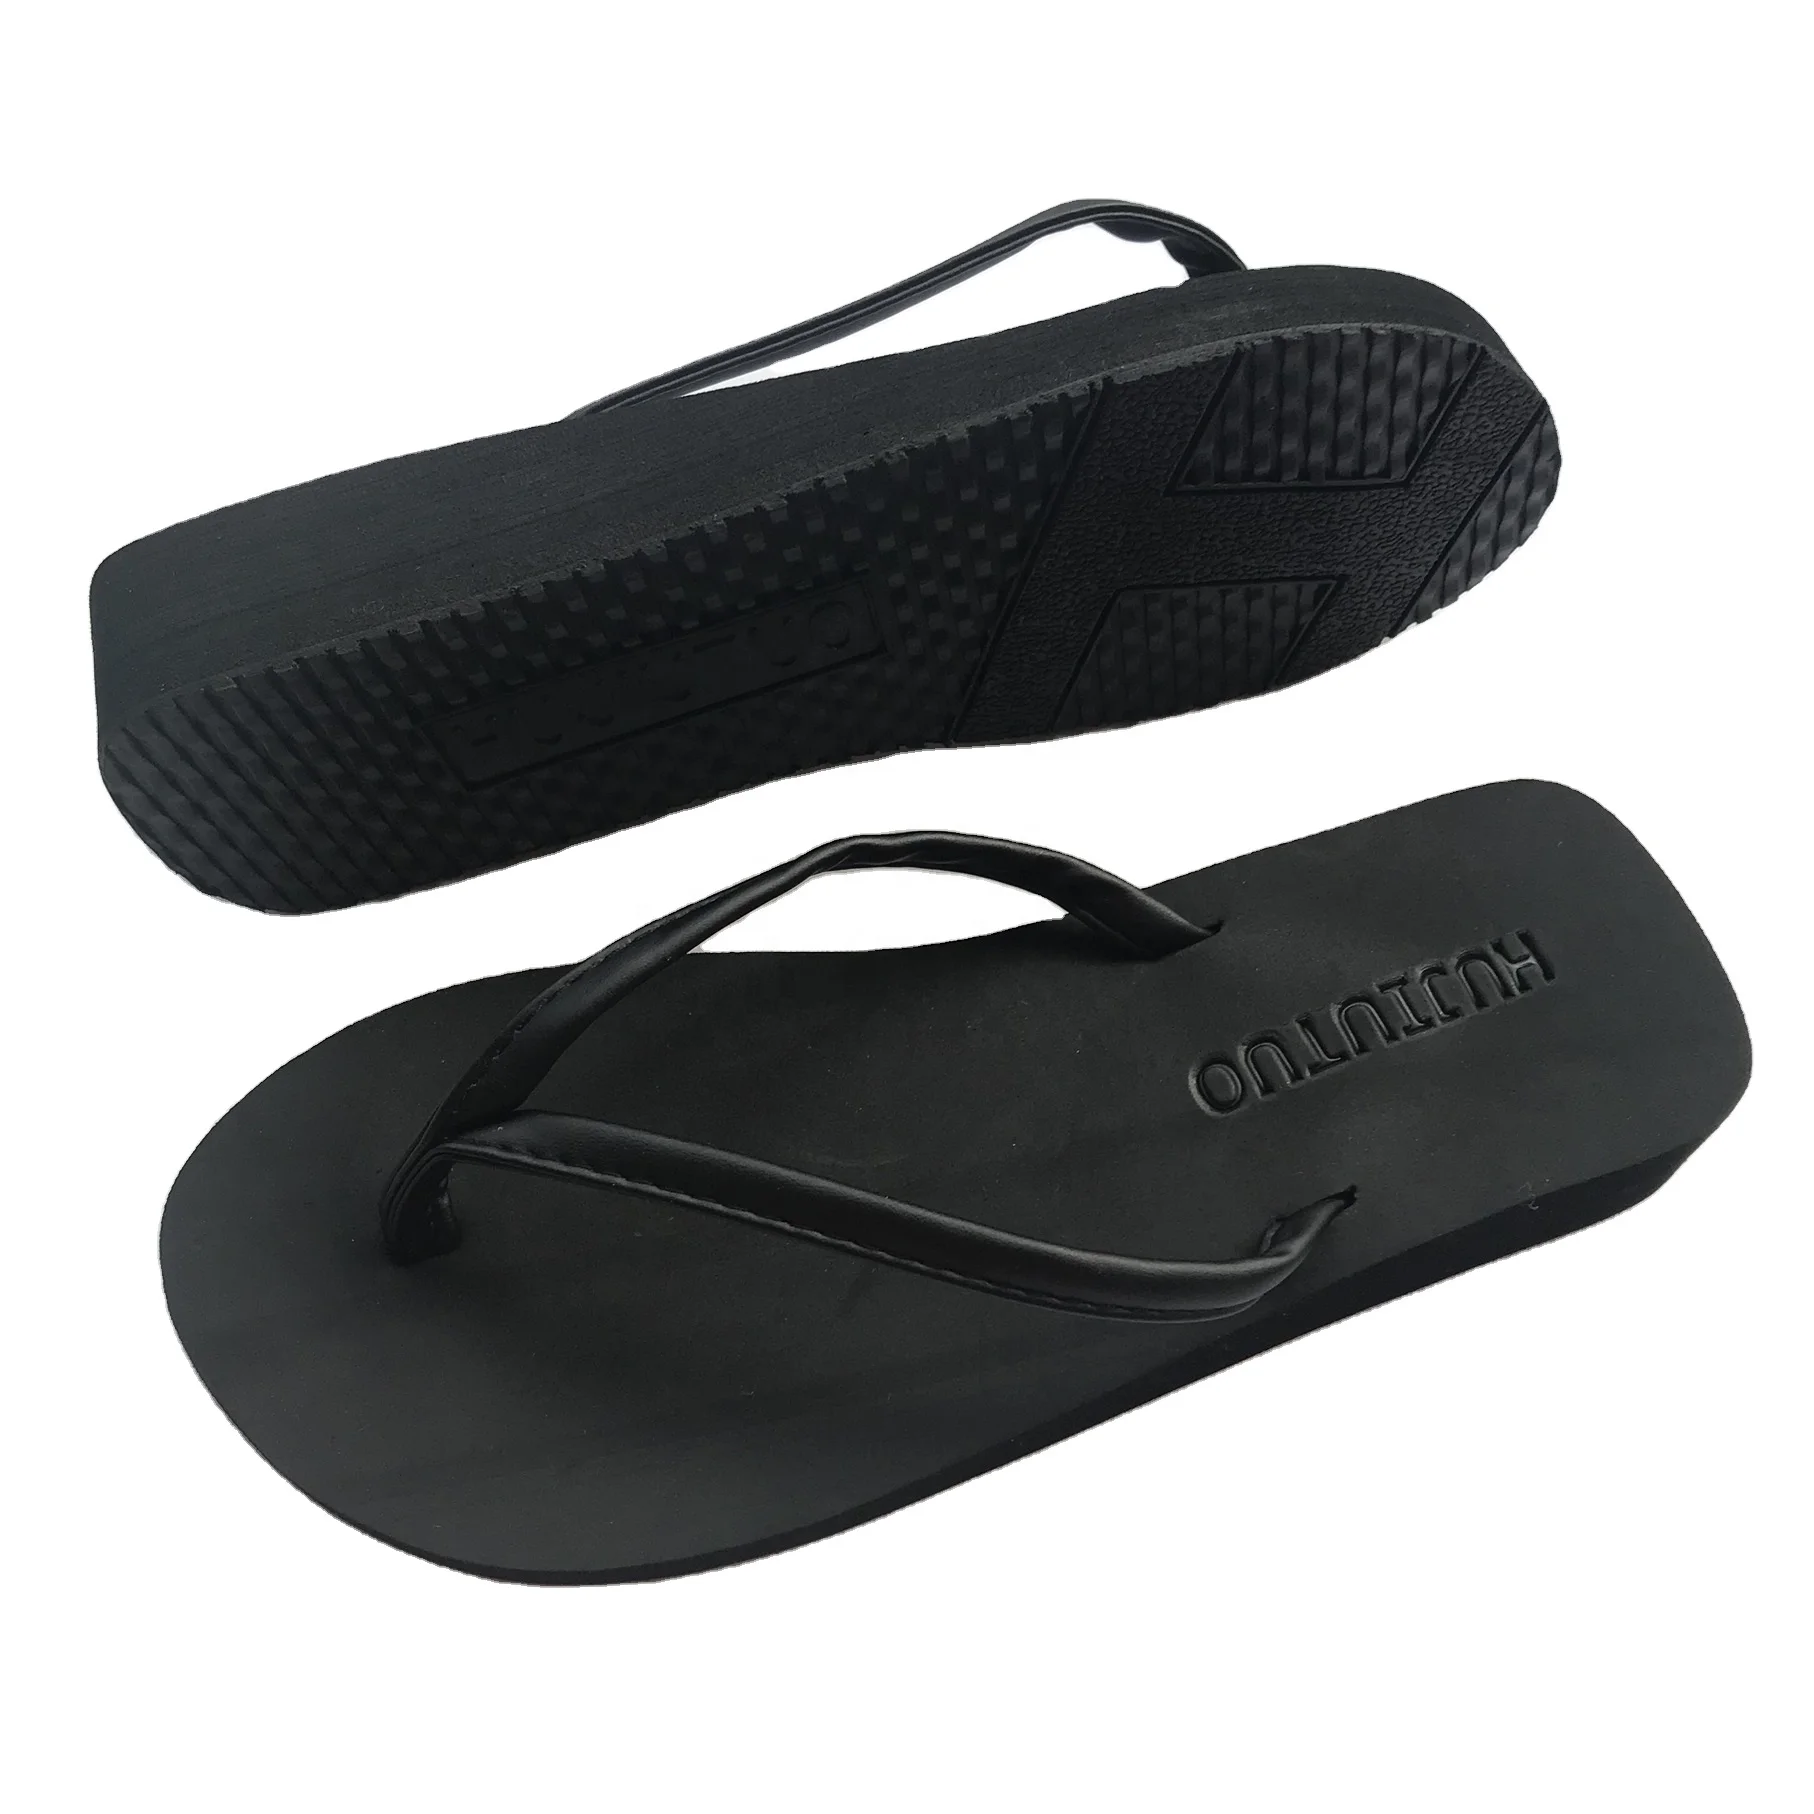 

agent cheap flip flops manufacturer, flip flops women sandals new design, cheap wholesale women flip flop sandals